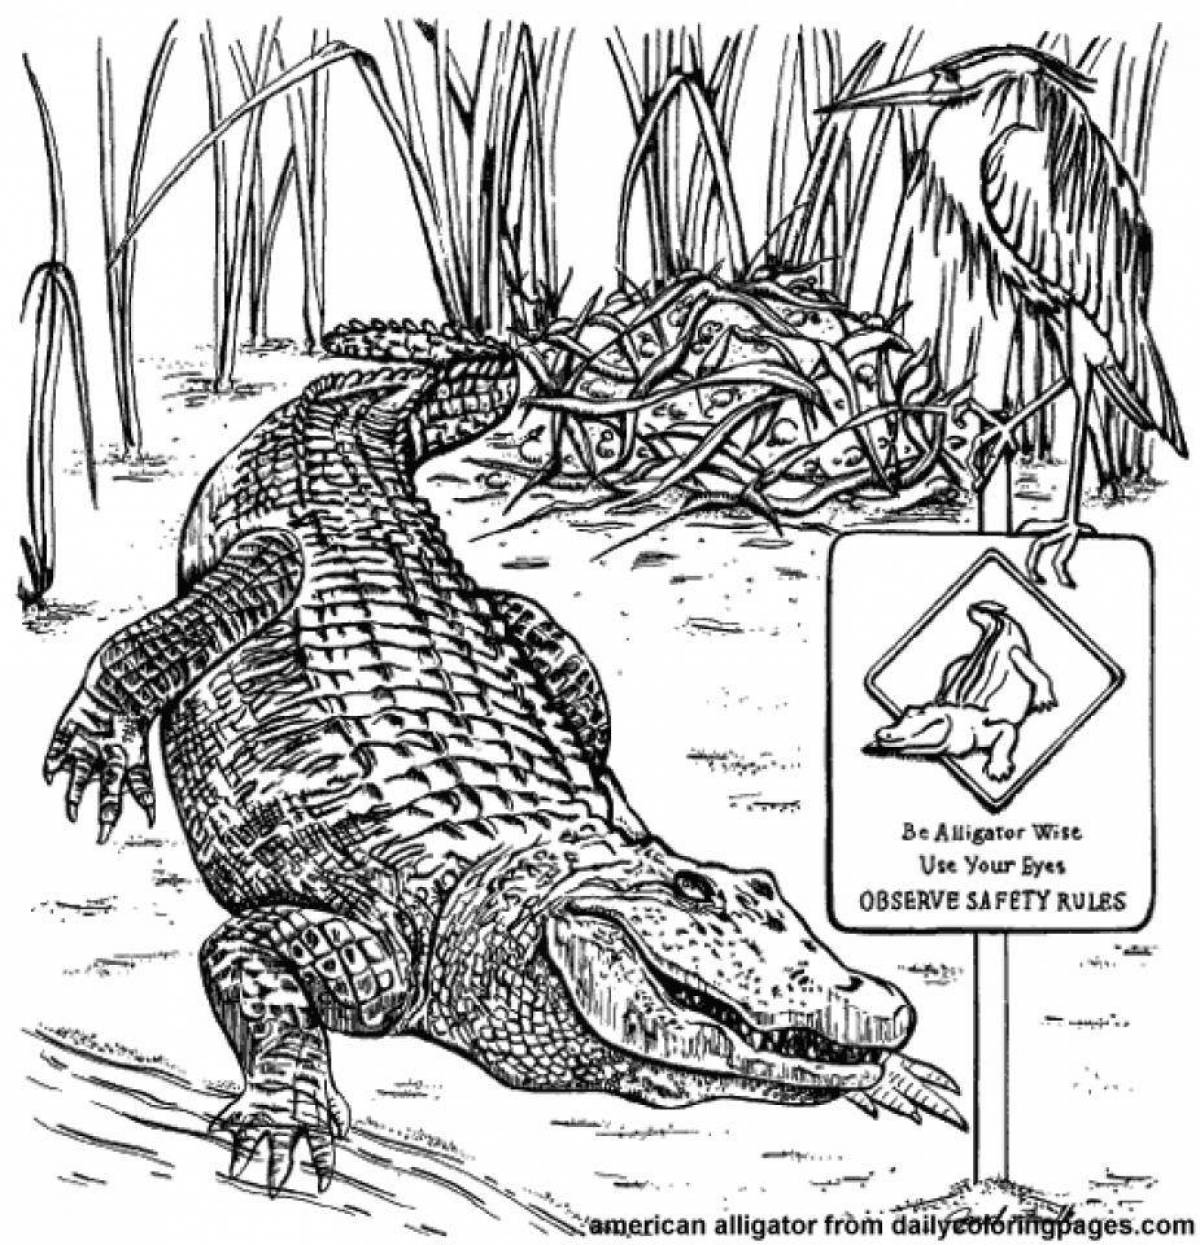 Привлекательная раскраска гребенчатого крокодила